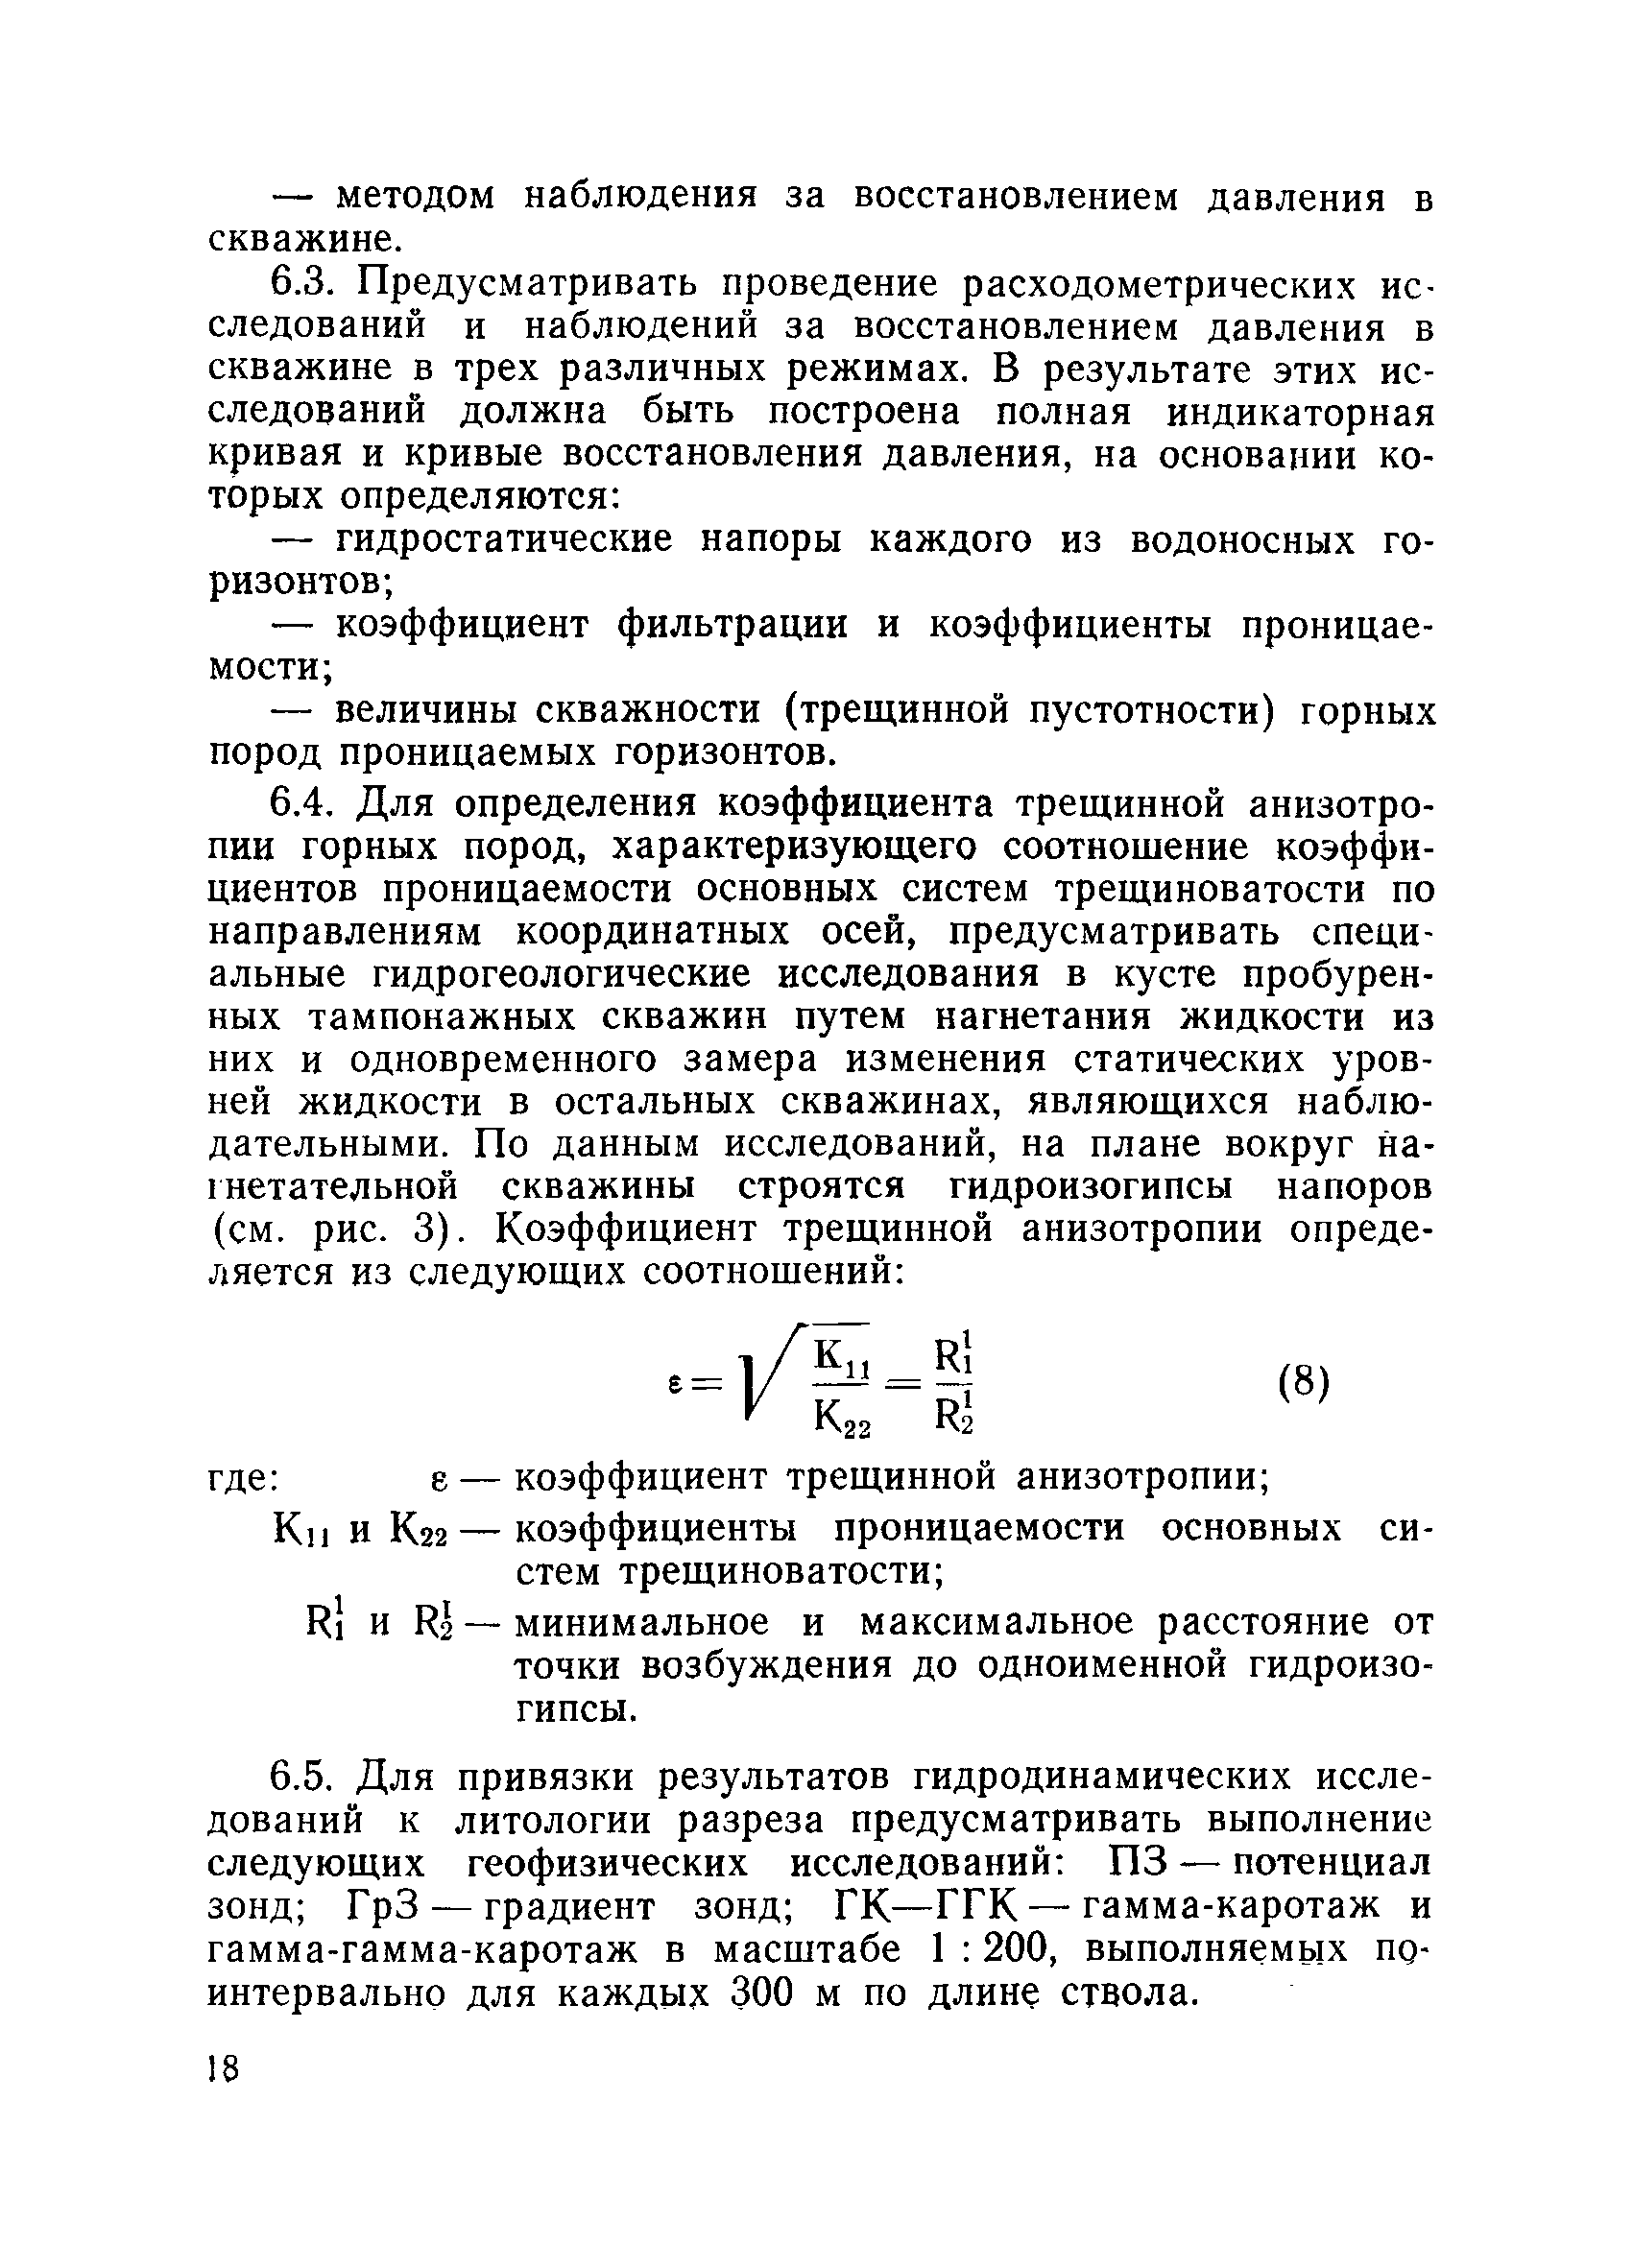 ВНТП 6-76